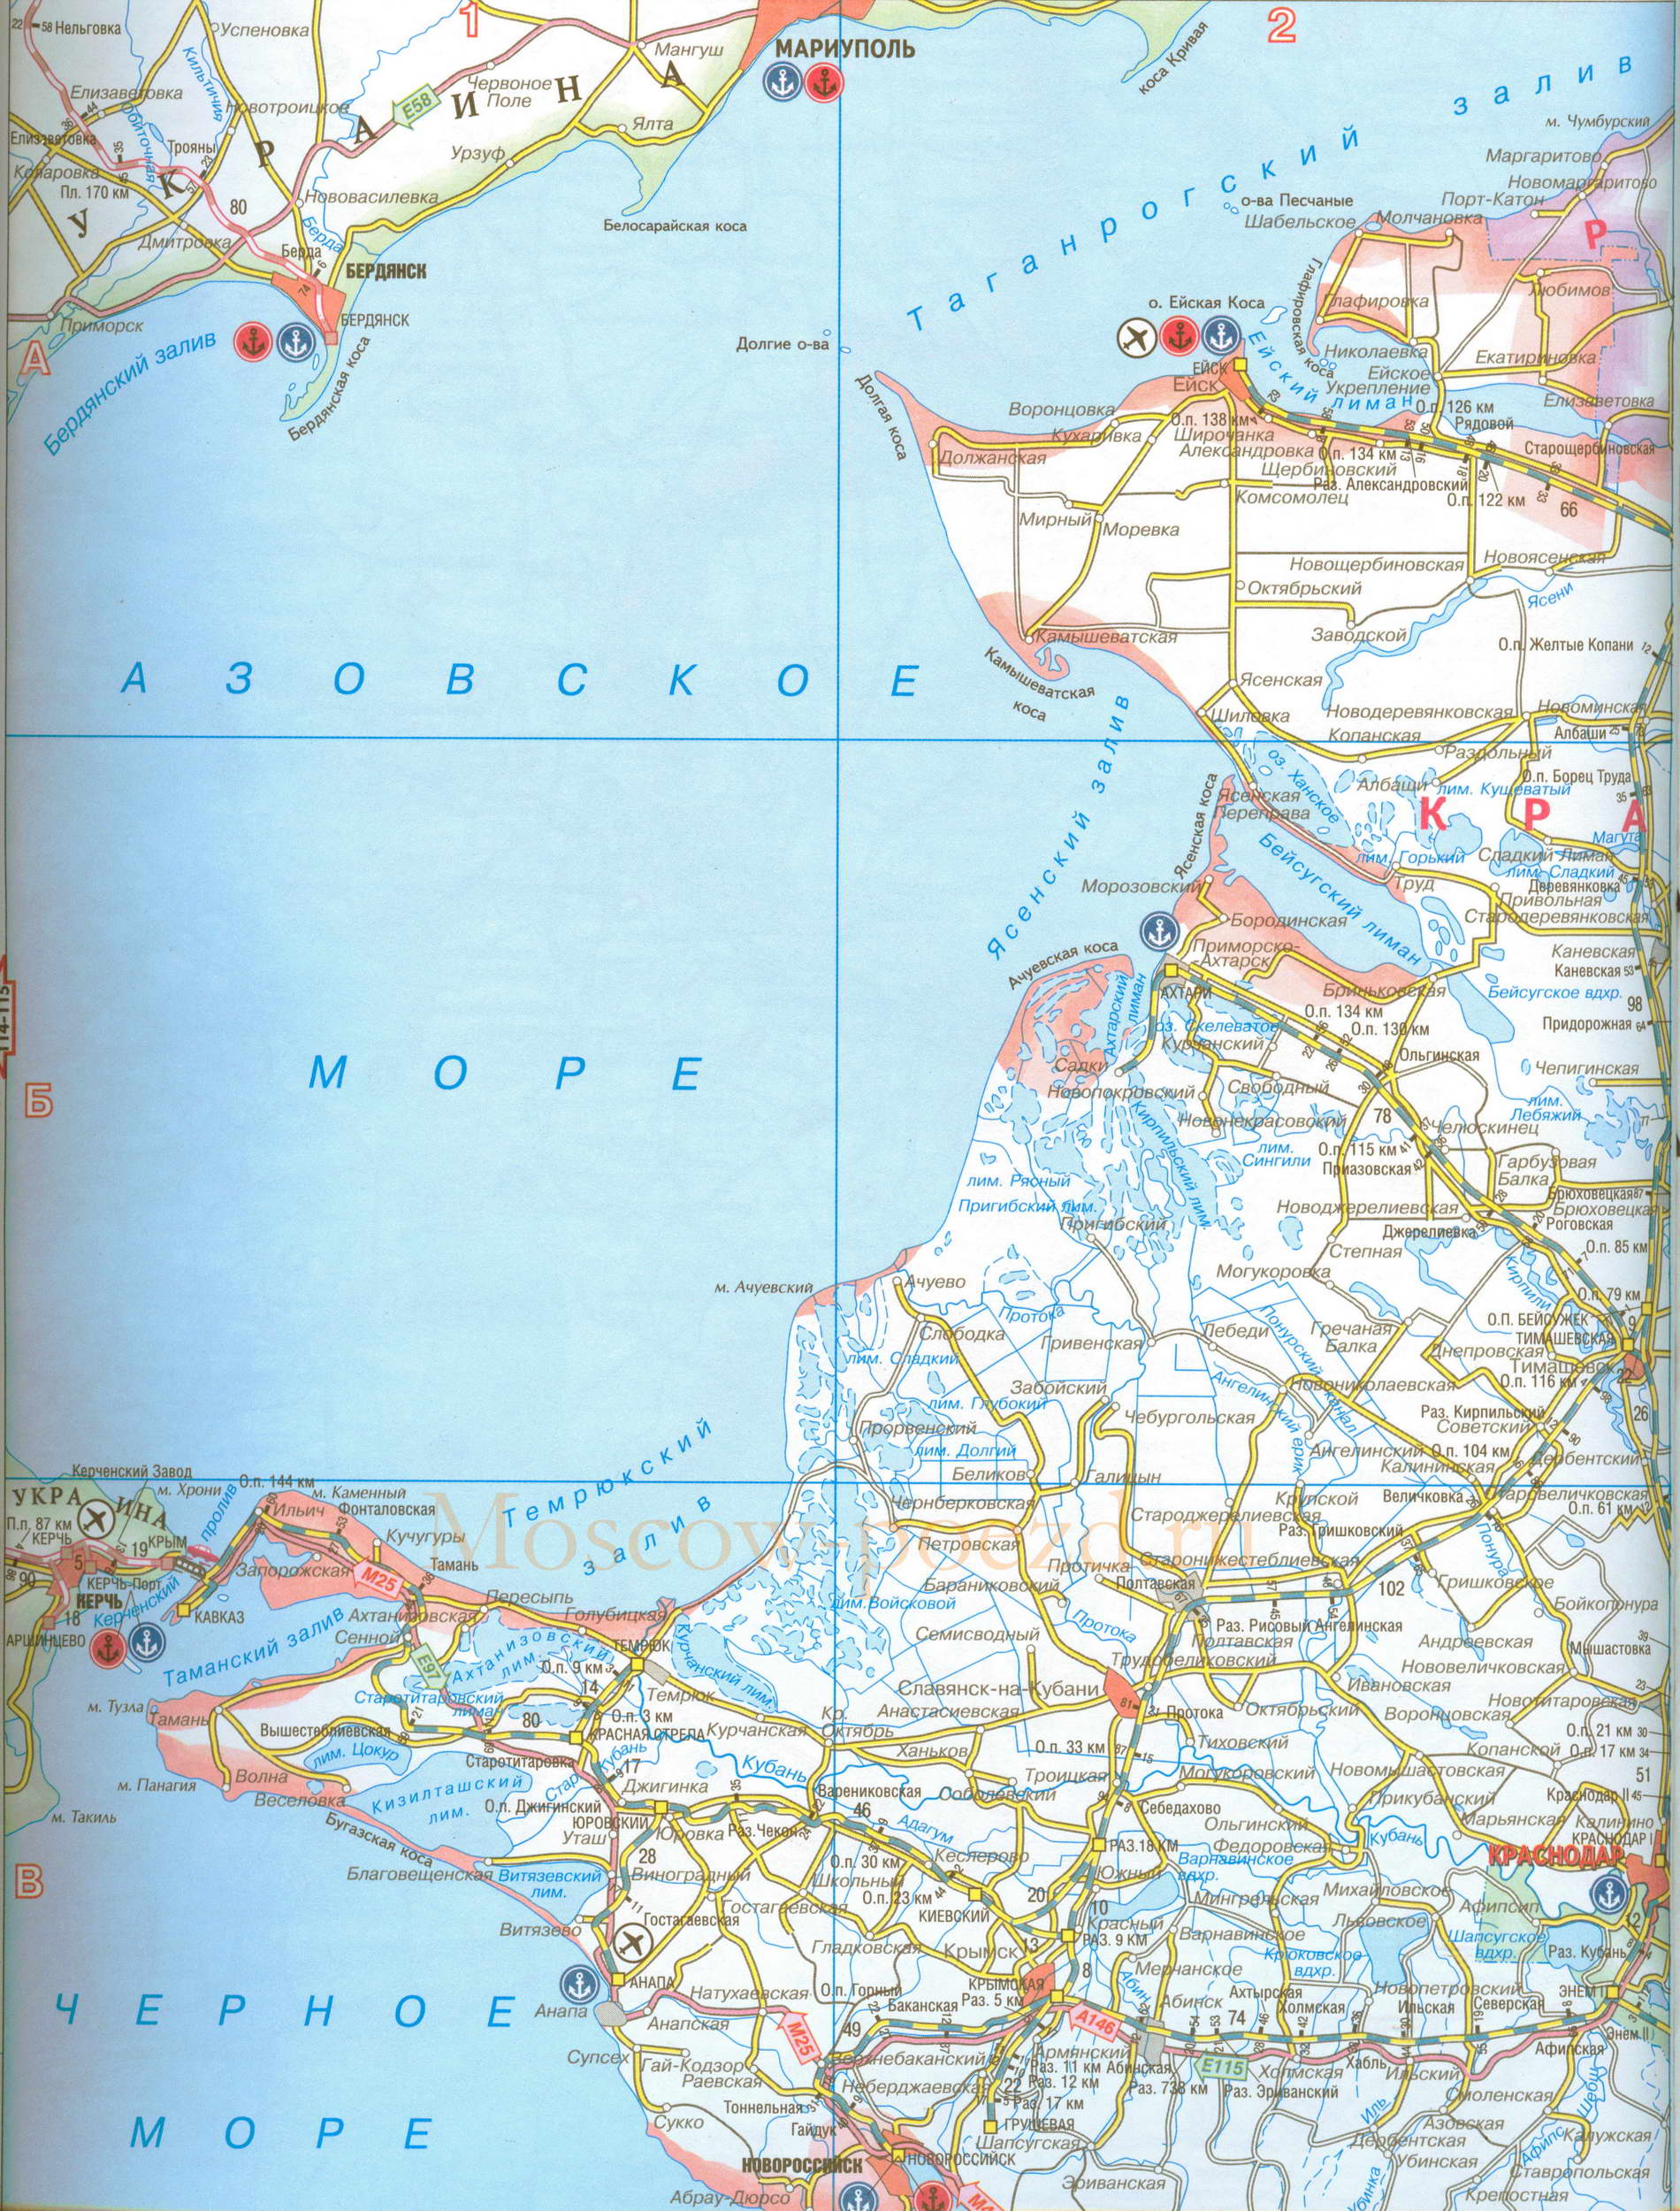 Карта Краснодарского края. Карта железных дорог и автодорог Краснодарского края, A0 - 